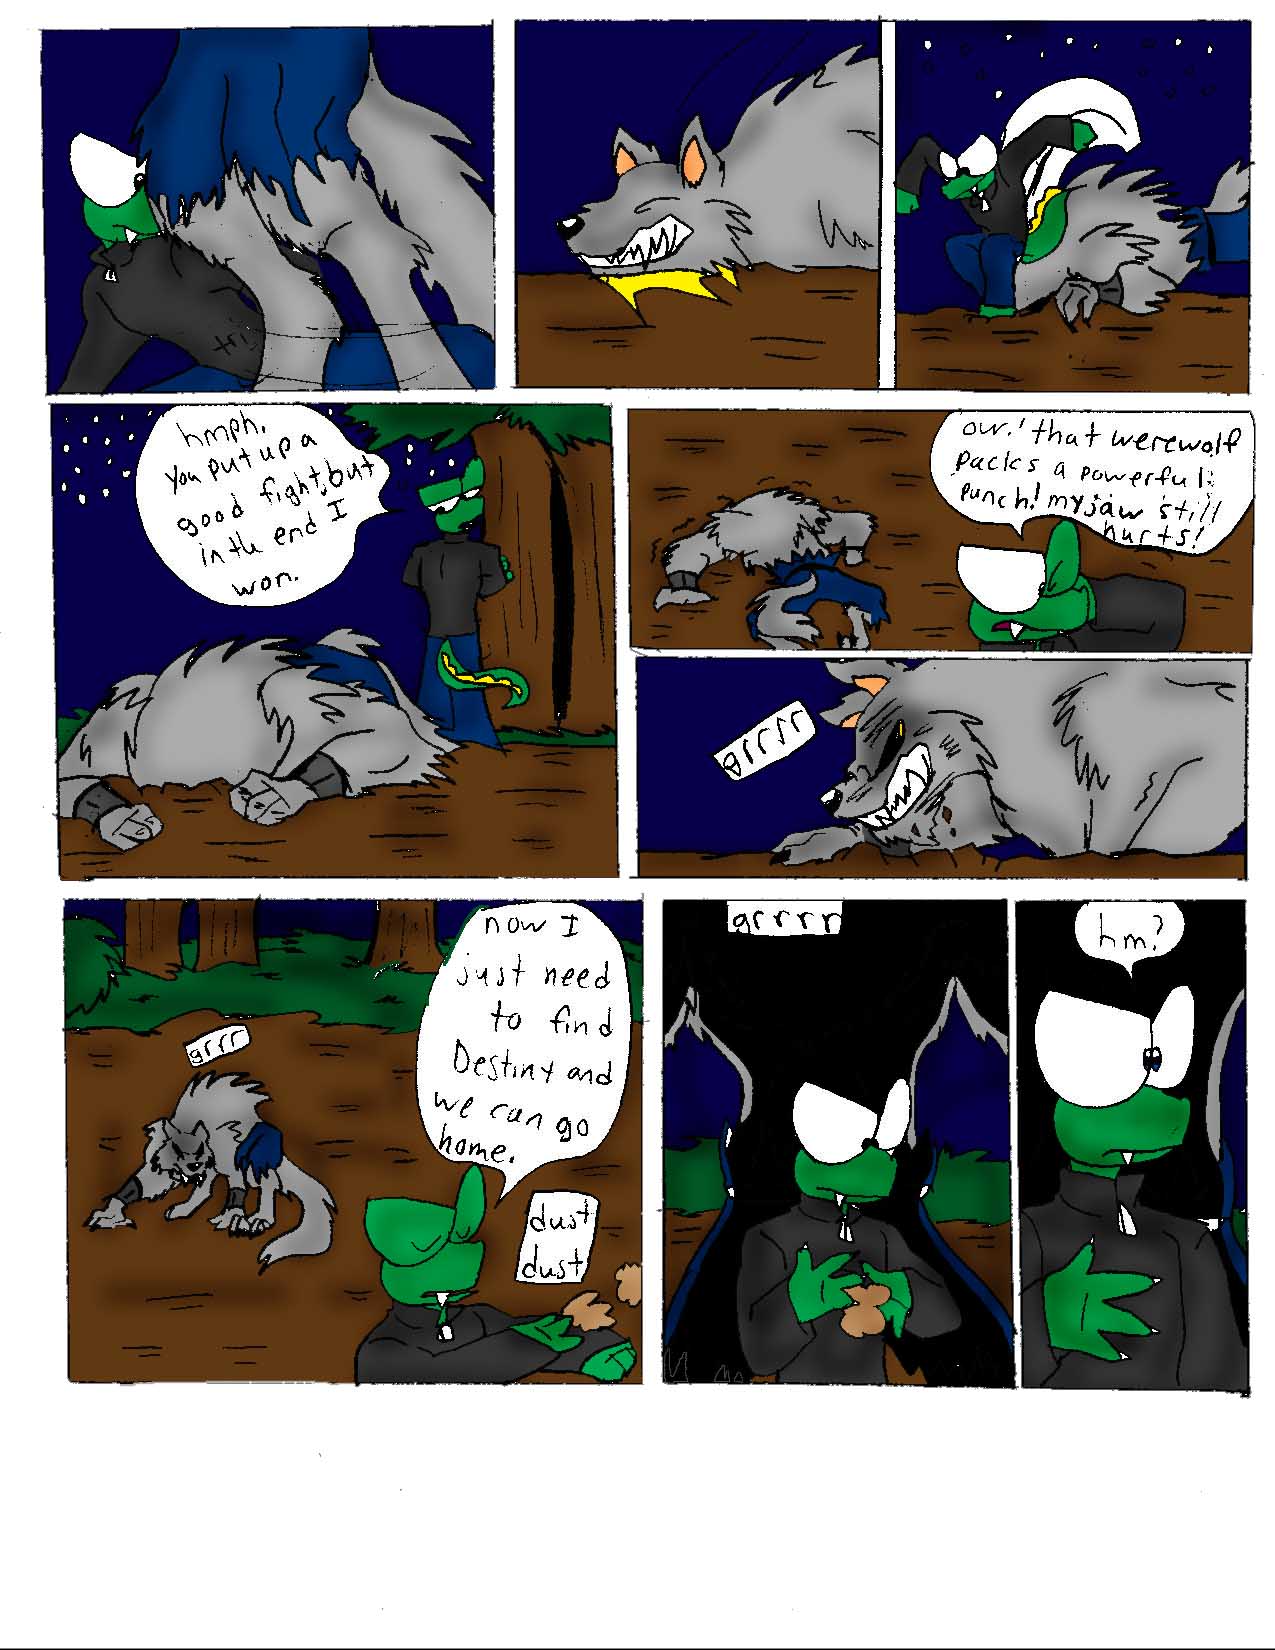 Meet Bruno comic#5 by crocdragon89